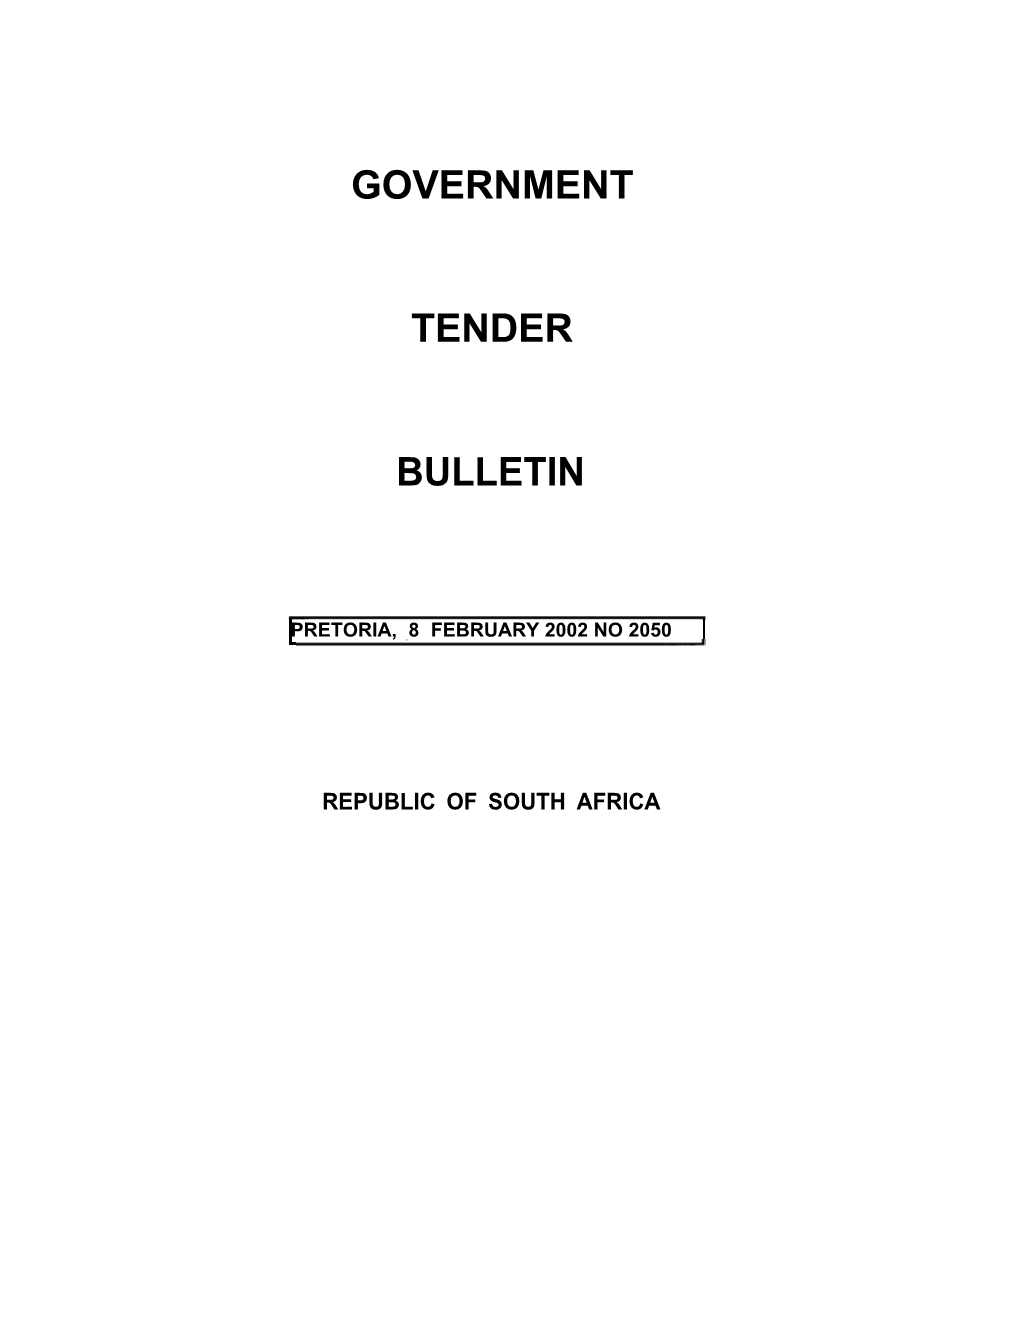 Tender Bulletin No.2050